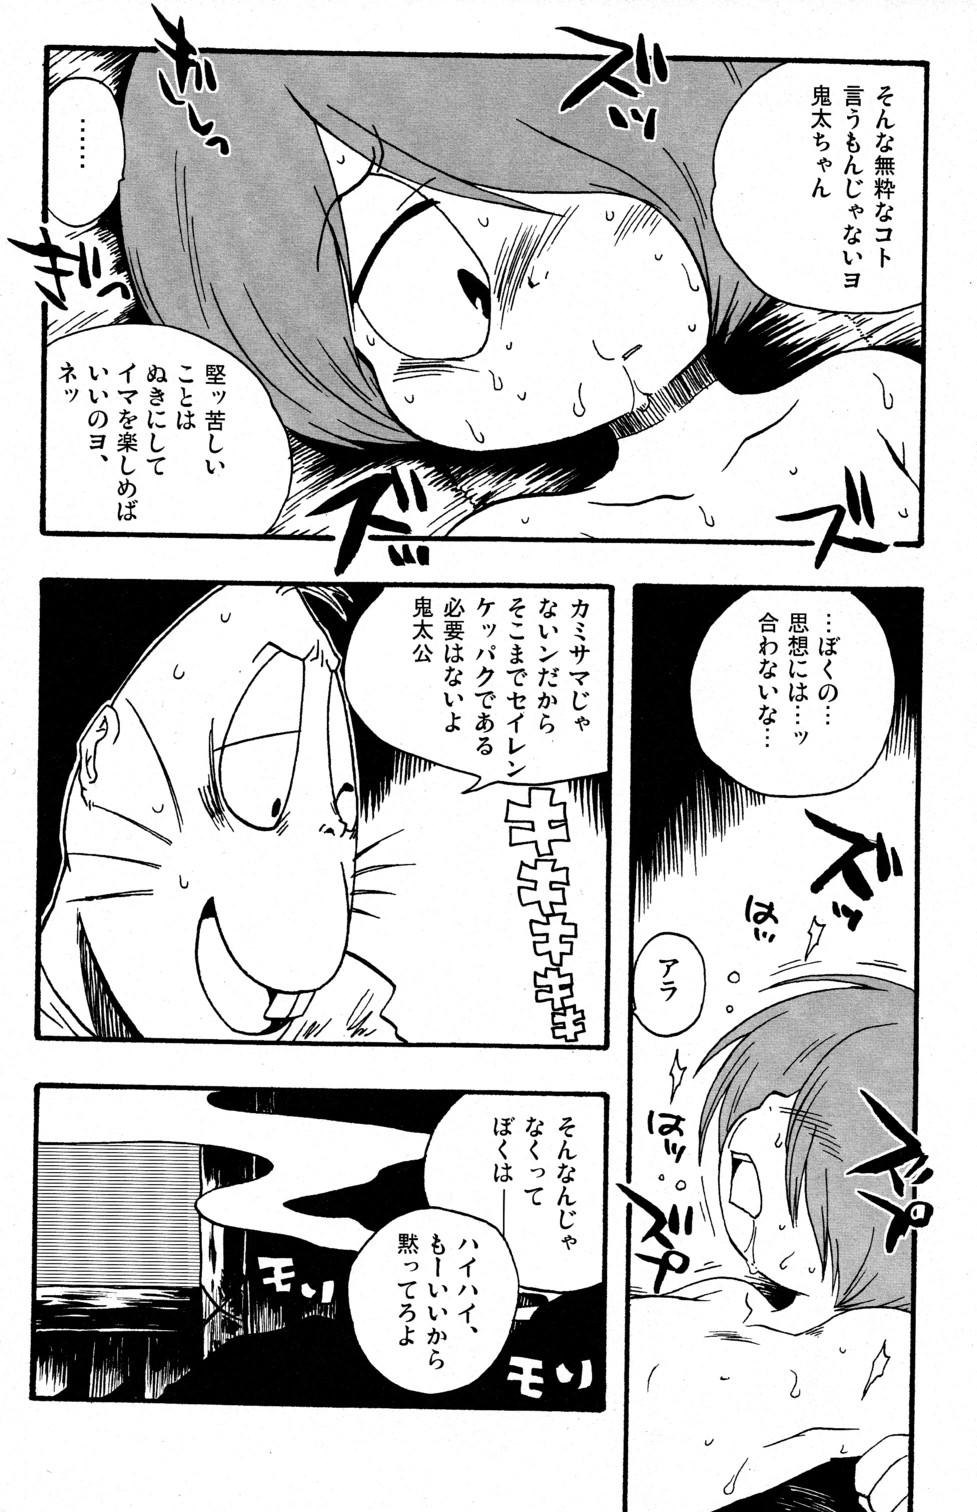 Girls Getting Fucked Kawaisa Amatte Nantoka Hyakubai - Gegege no kitarou Sex - Page 8